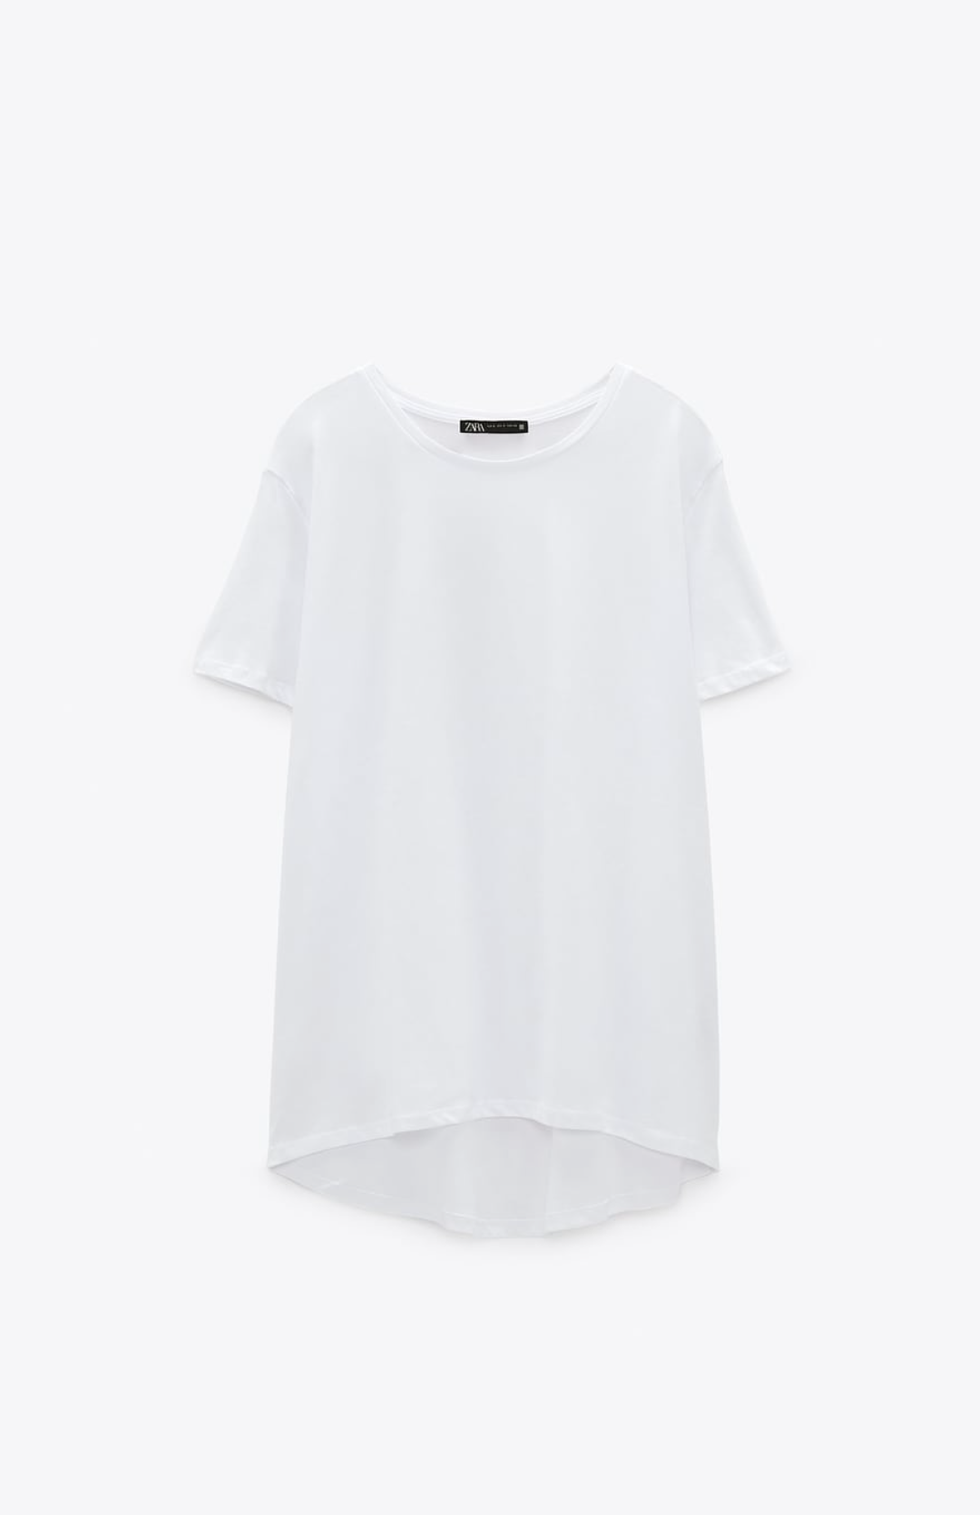 Camisetas básicas blancas según tu silueta: ¿cuál es la que más te  favorece? - Foto 1